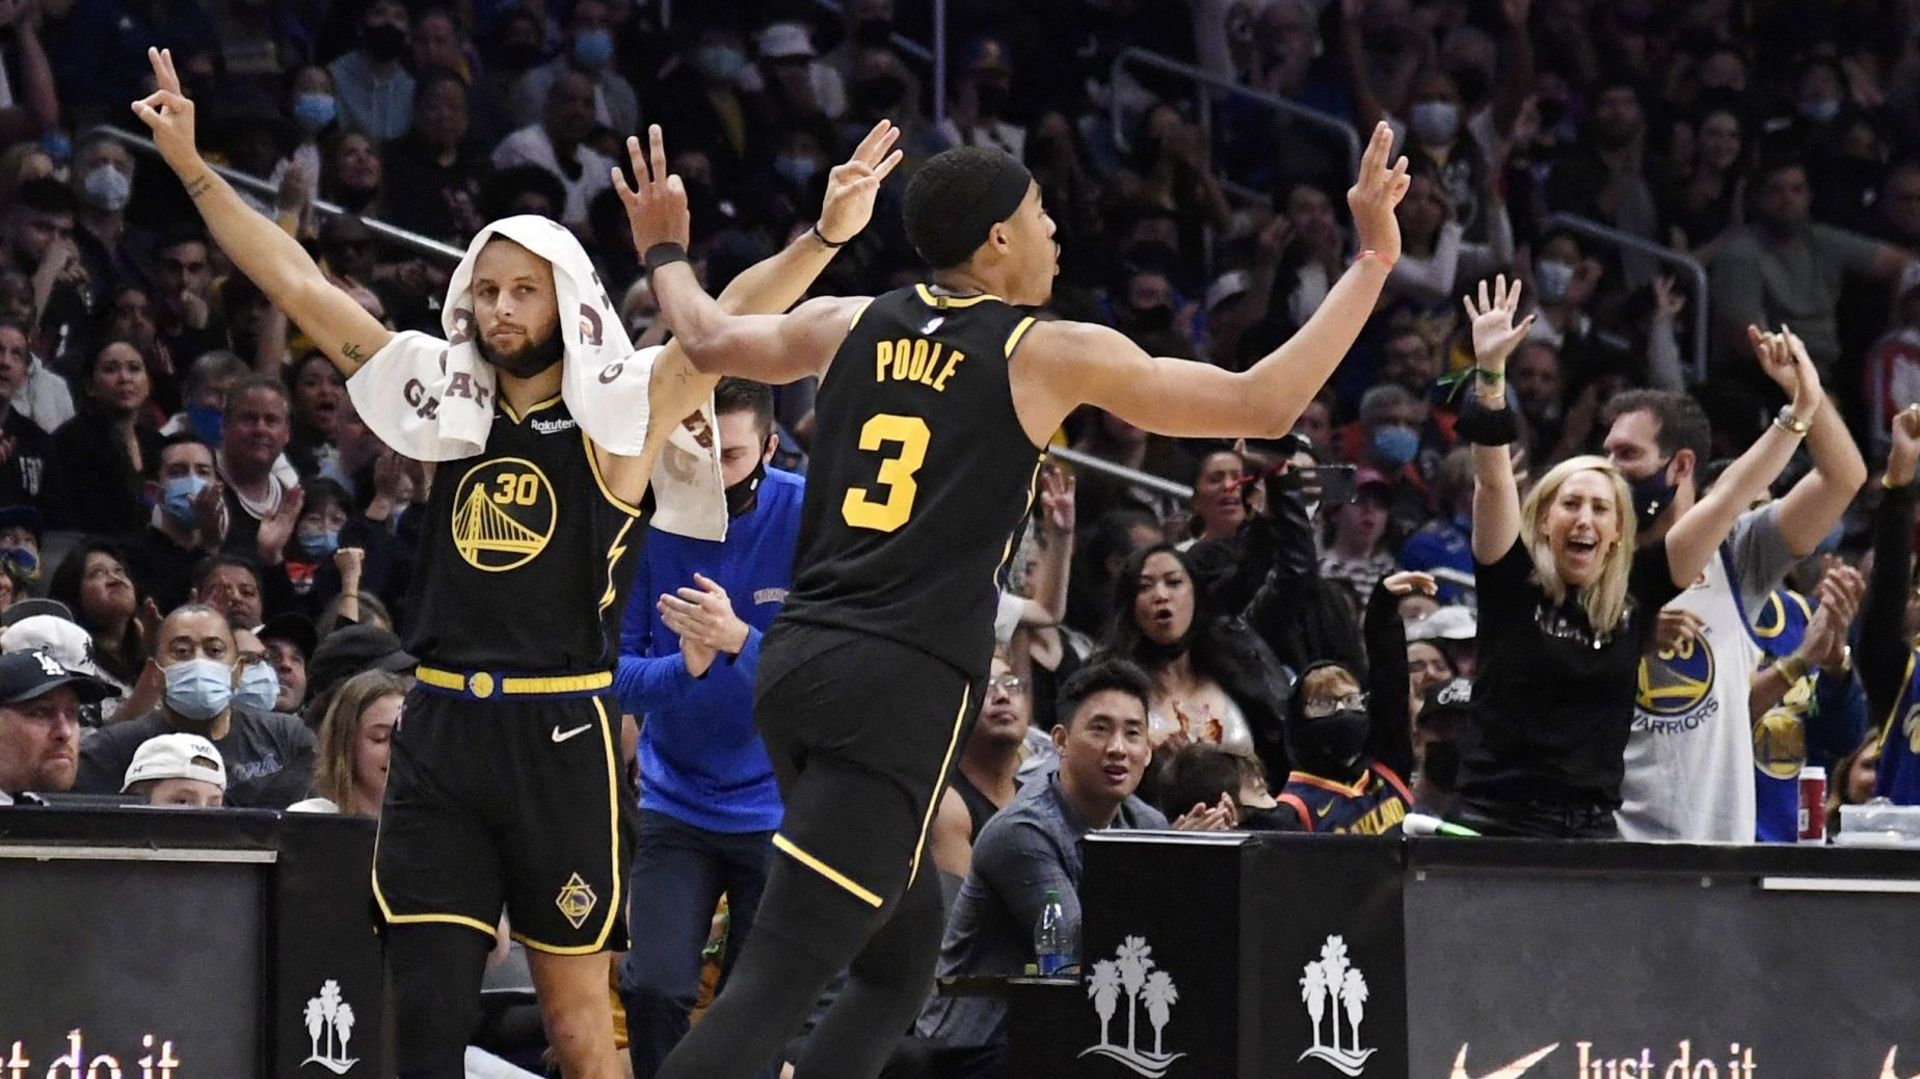 Steph Curry fête la victoire de Golden State. Les Warriors se sont offerts une 7ème victoire consécutive en battant les Clippers sur leur terrain (105-90) dimanche en NBA. Steph Curry a montré la voie avec son shoot longue distance.

